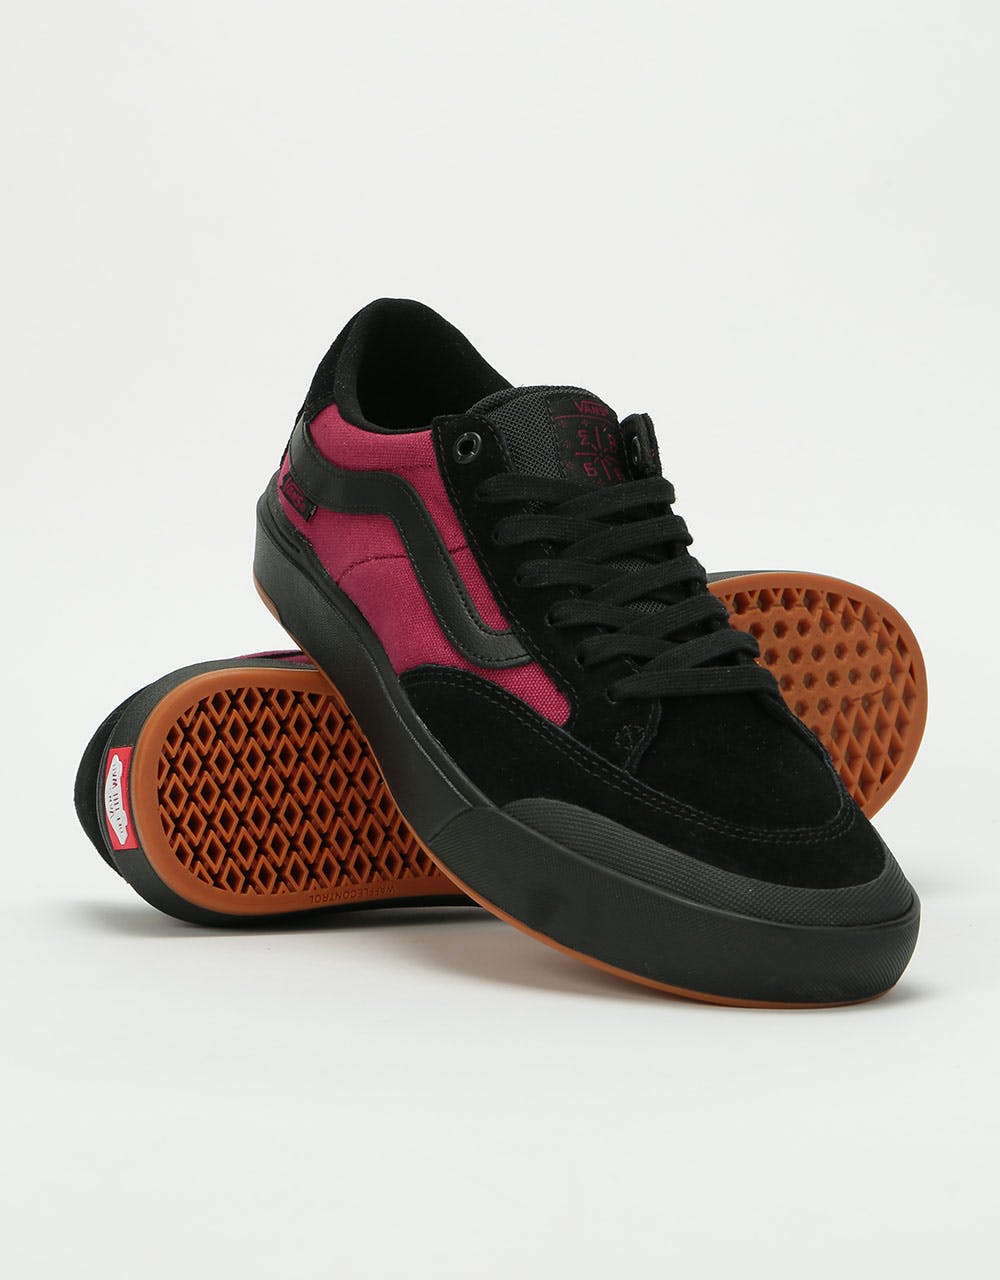 Vans Berle Pro Skate Shoes - (Punk) Black/Beet Red